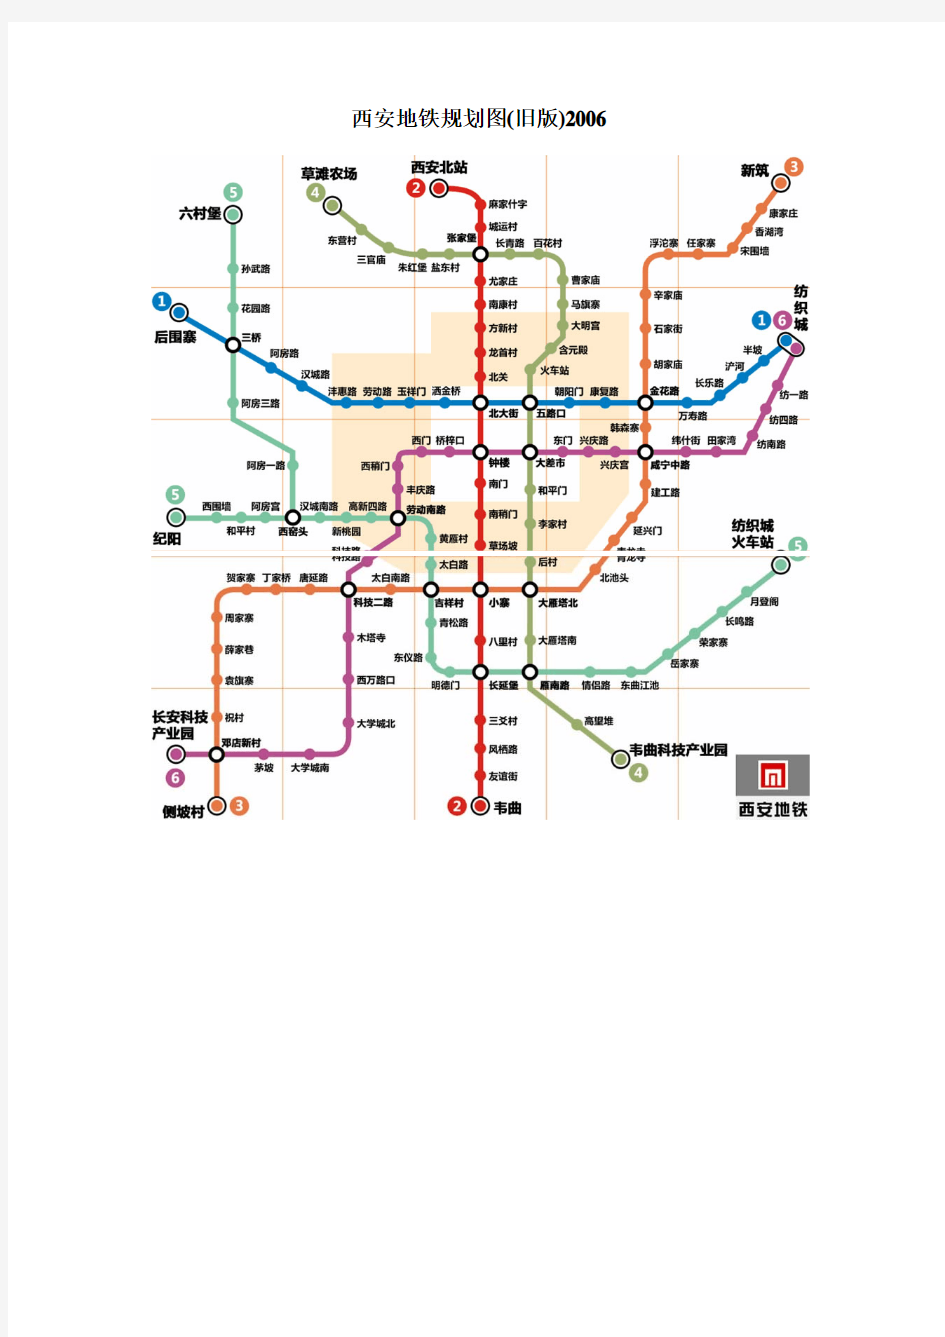 西安地铁新旧规划图及线路示意图2011